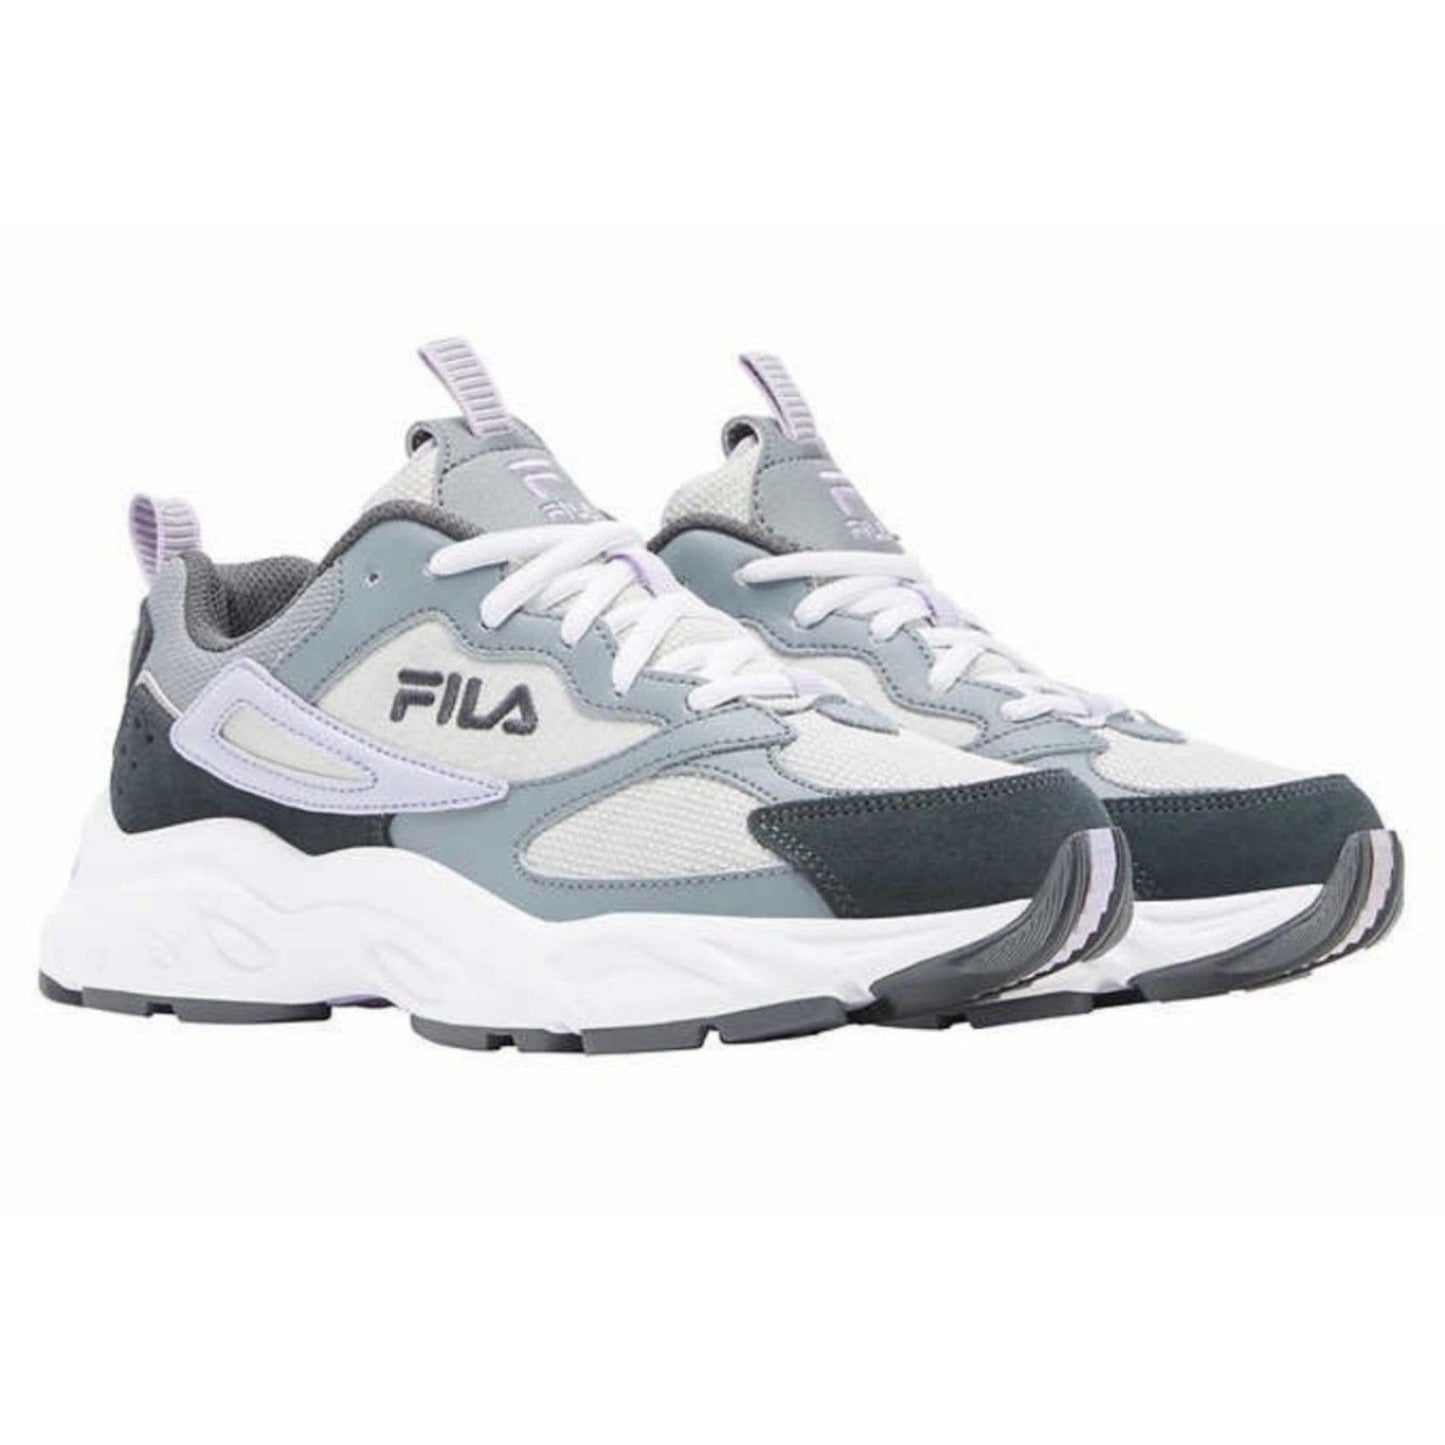 FILA Avtivewear Sneakers Women's Lilac Purple Envizion Athletic Shoes